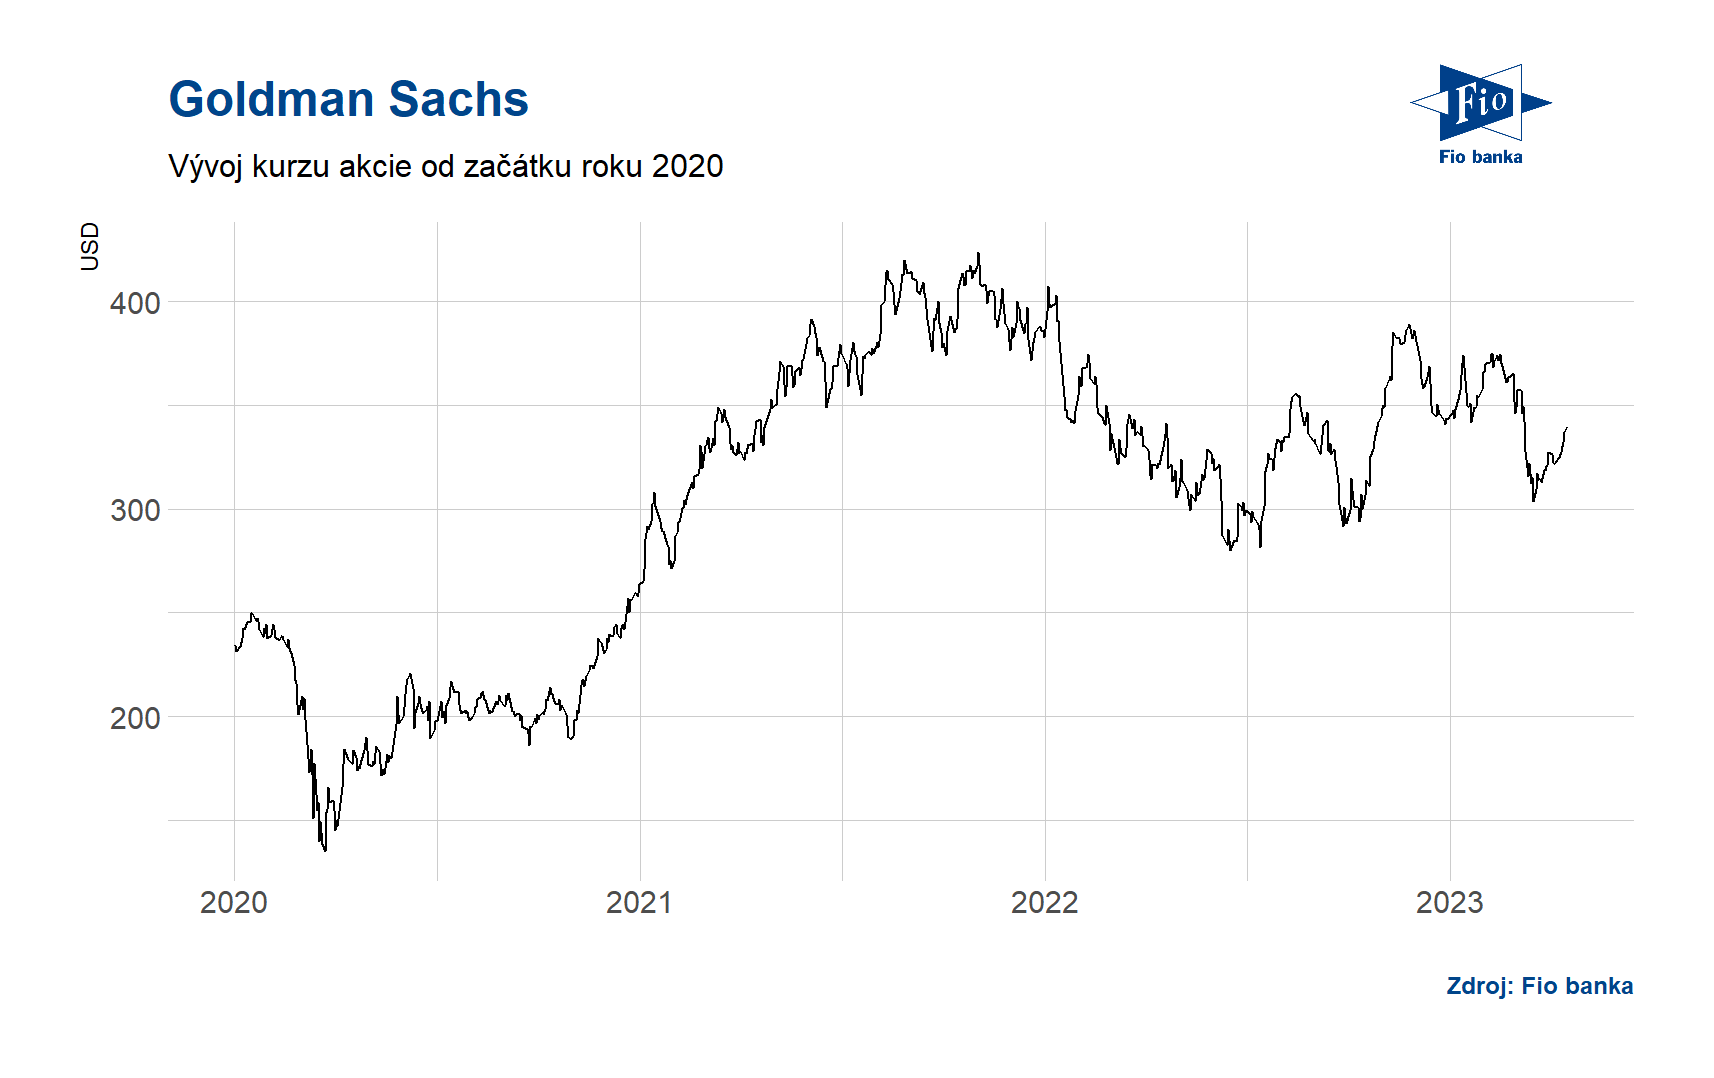 Vývoj akcií Goldman Sachs